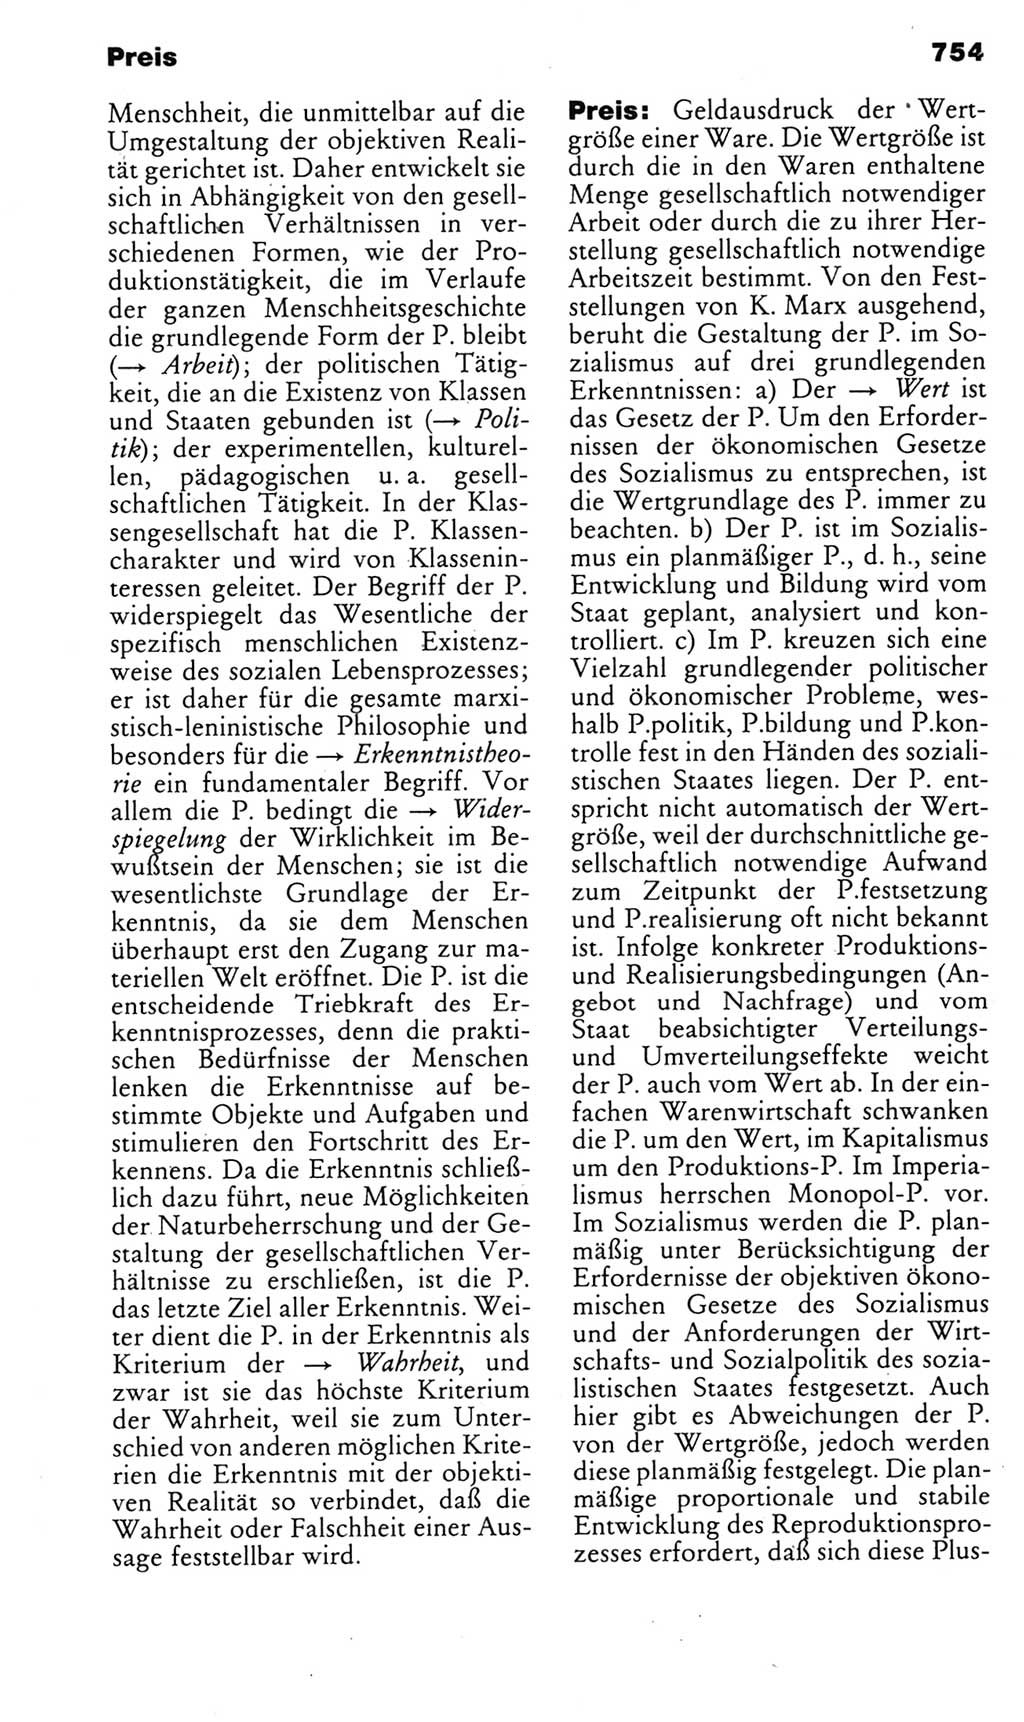 Kleines politisches Wörterbuch [Deutsche Demokratische Republik (DDR)] 1985, Seite 754 (Kl. pol. Wb. DDR 1985, S. 754)